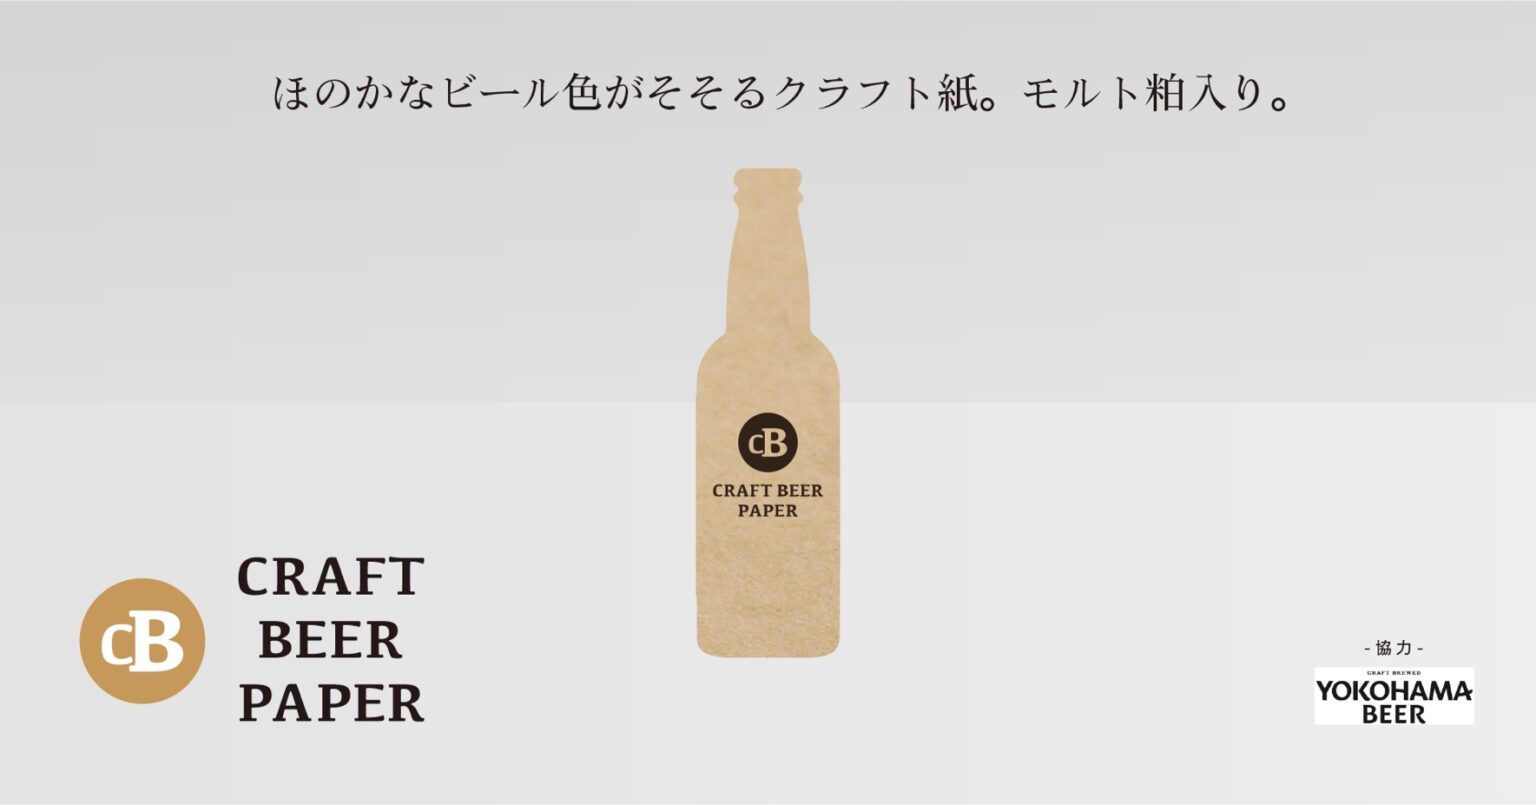 株式会社kitafukuとともに開発した「クラフトビールペーパー」。